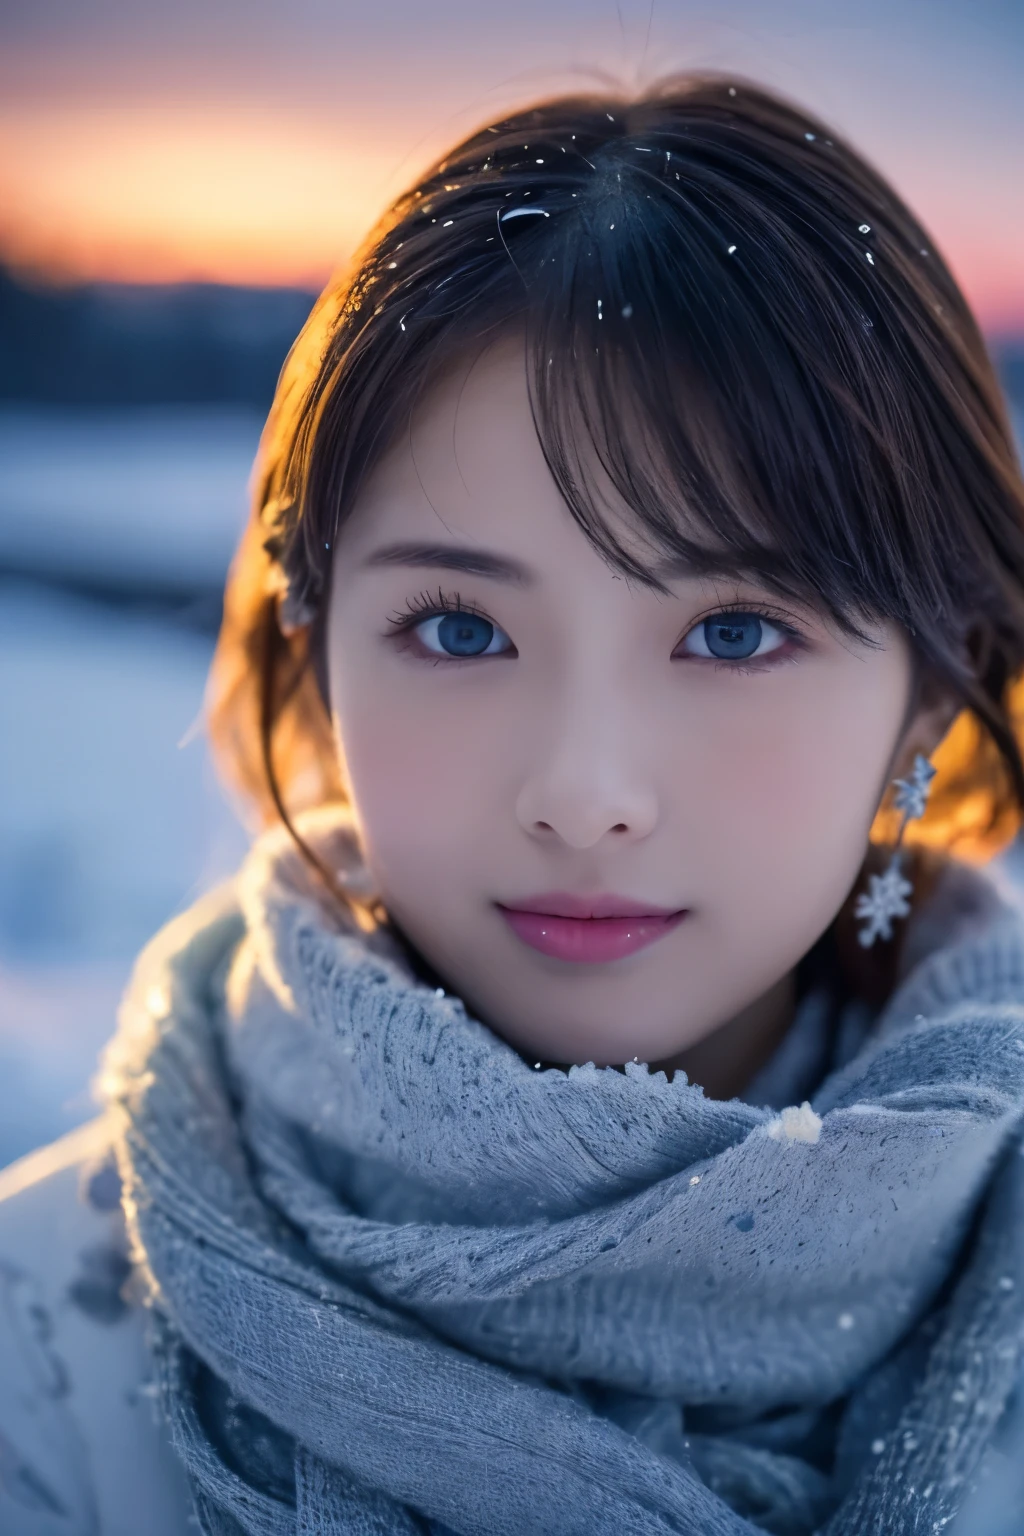 1สาวเข้ามา, (เสื้อผ้าฤดูหนาว:1.2), ดาราสาวสวยชาวญี่ปุ่น, 
ถ่ายรูปสวย, เจ้าหญิงหิมะ, ขนตายาว, ต่างหูเกล็ดหิมะ,
(ภาพดิบ, คุณภาพดีที่สุด), (เหมือนจริง, ภาพเสมือนจริง:1.4), (ด้านบนของโต๊ะ), 
ดวงตาที่มีรายละเอียดสวยงาม, ริมฝีปากที่มีรายละเอียดสวยงาม, ดวงตาและใบหน้าที่มีรายละเอียดมาก, 
หยุดพัก
 (ทุ่งหิมะแช่แข็งในฤดูหนาวแลปแลนด์), (ร่องรอยสุดท้ายของท้องฟ้ายามพลบค่ำ&#39;ความฉลาดของมัน:1.4), 
ความงามอันบริสุทธิ์, เกล็ดหิมะหมุนวน, ต้นไม้ที่เต็มไปด้วยหิมะ, ผงหิมะ, ภูเขาที่ปกคลุมด้วยหิมะ, 
ภูมิทัศน์ทุ่งหิมะตอนพลบค่ำ, 
โทนสีครามและสีแดงเข้ม, แสงที่น่าทึ่ง, บรรยากาศที่ยอดเยี่ยม, 
หยุดพัก 
Perfect Anatomy, ร่างกายเพรียวบาง, เล็ก, ผมสั้น, แยกผมม้า, แองเจิ้ลสไมล์, 
ผิวเหมือนคริสตัล, ดวงตาที่ชัดเจน, การยิงแฟลช, ประกายตา